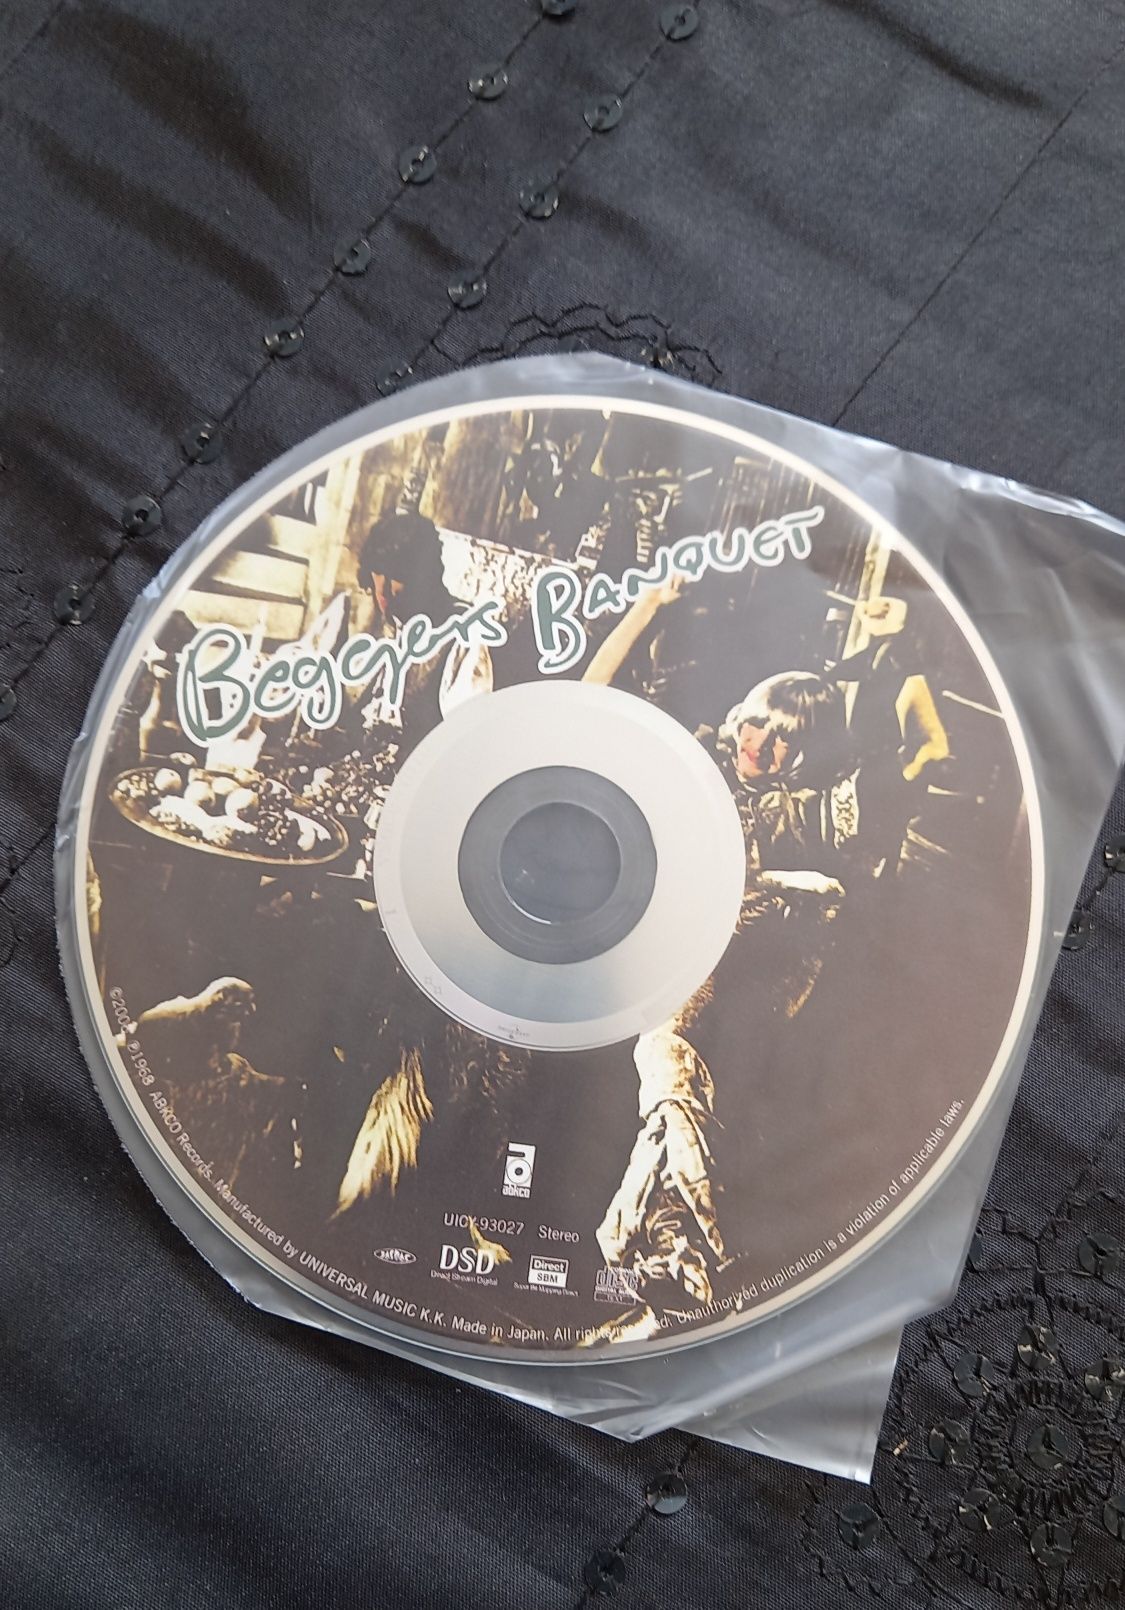 Rolling Stones Beggars Banquet LP CD com obi Japão